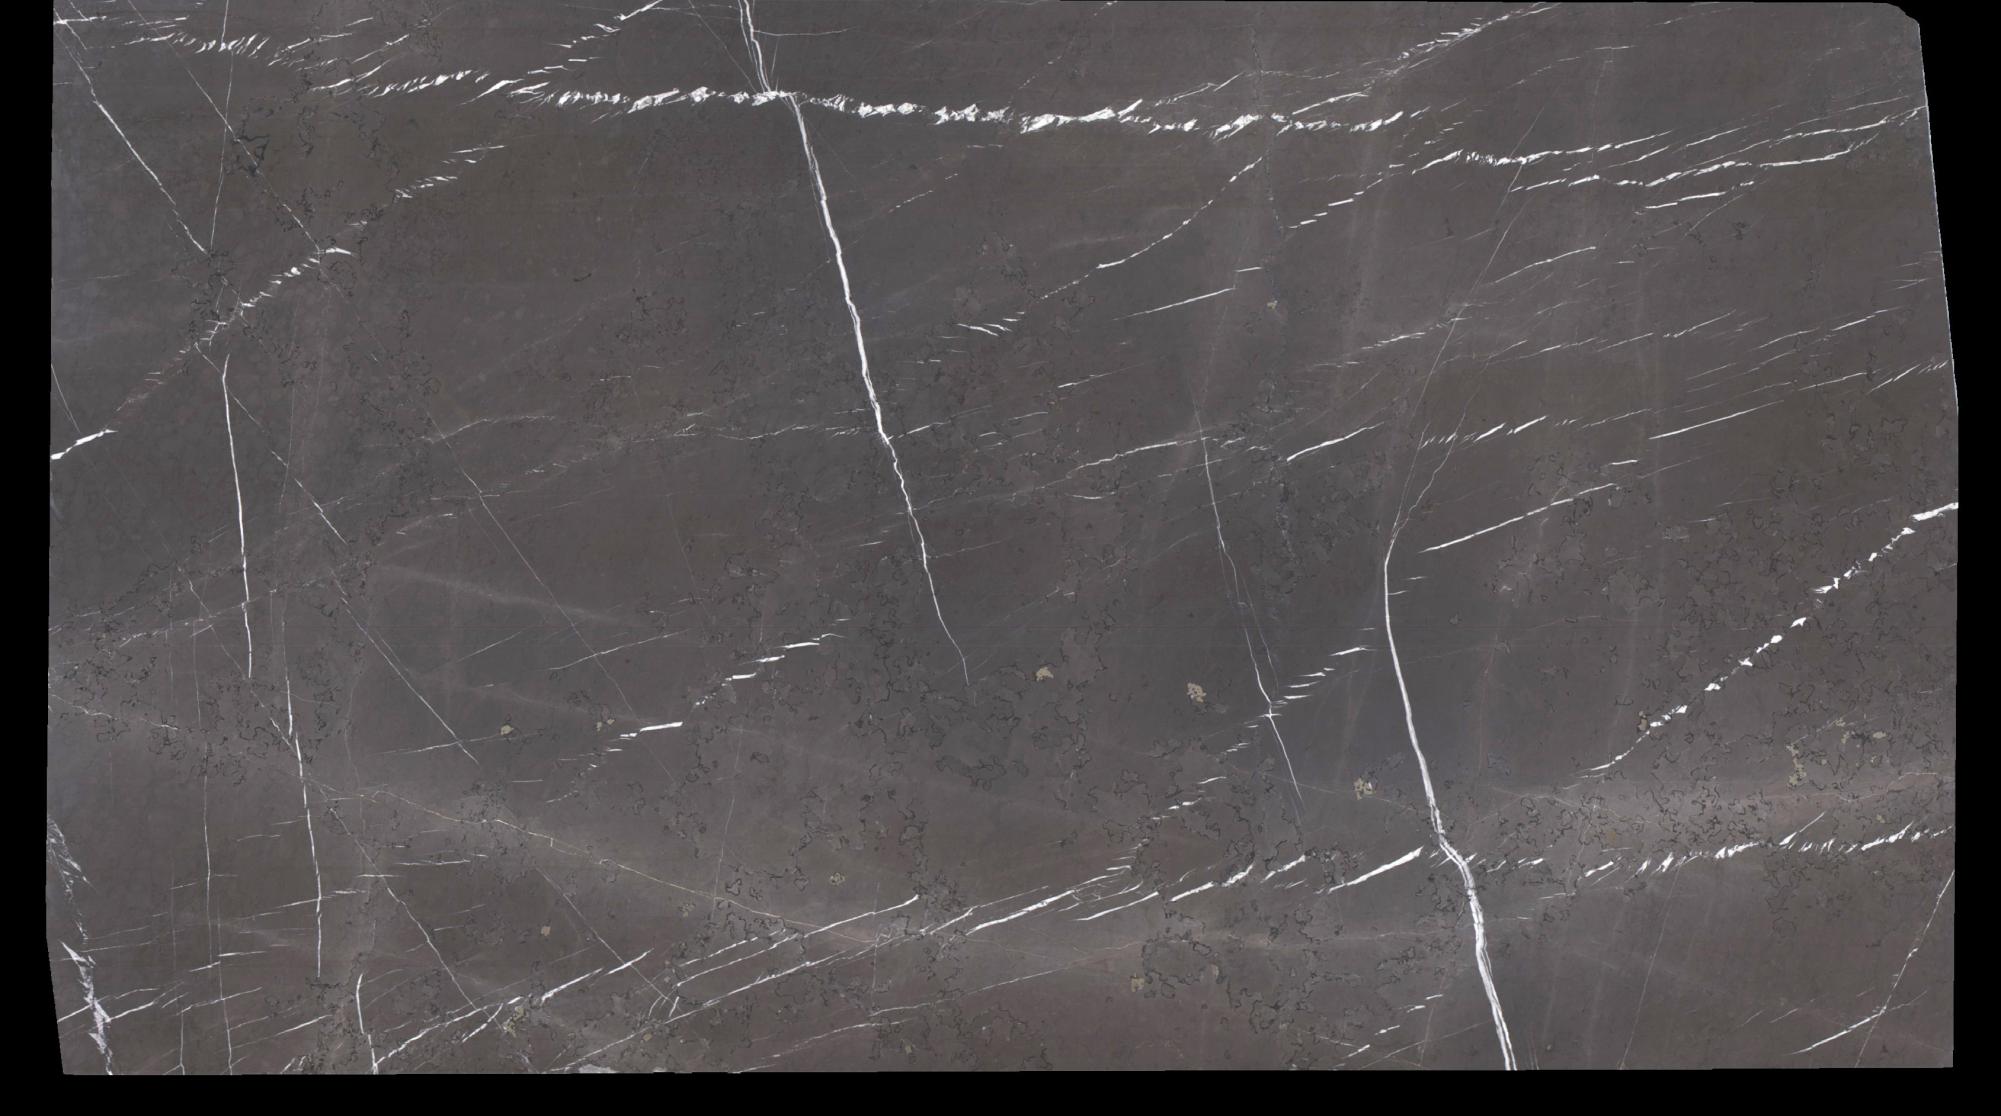 PIETRA GREY gebürstete Unmaßplatten 1723 aus Natur Marmor , Slab #15: Lieferung Veneto, Italien 